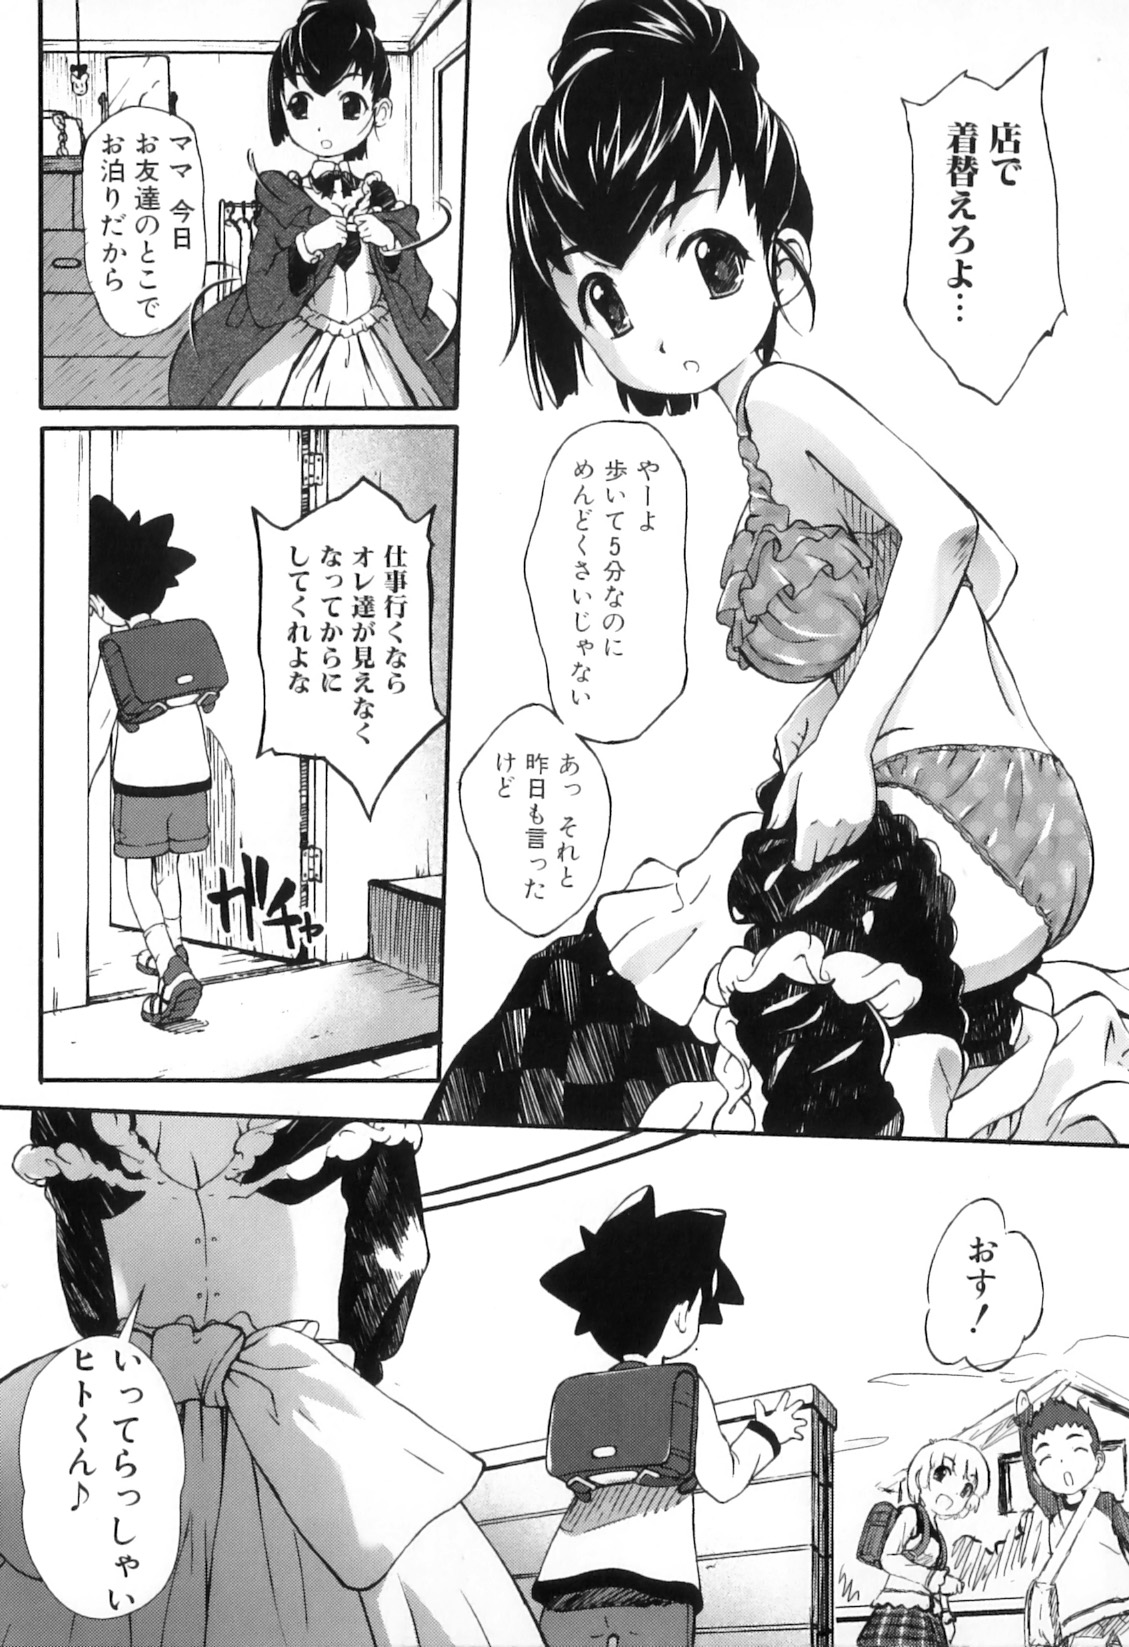 [Anthology] Boshi Chijou Kitan 2 page 41 full